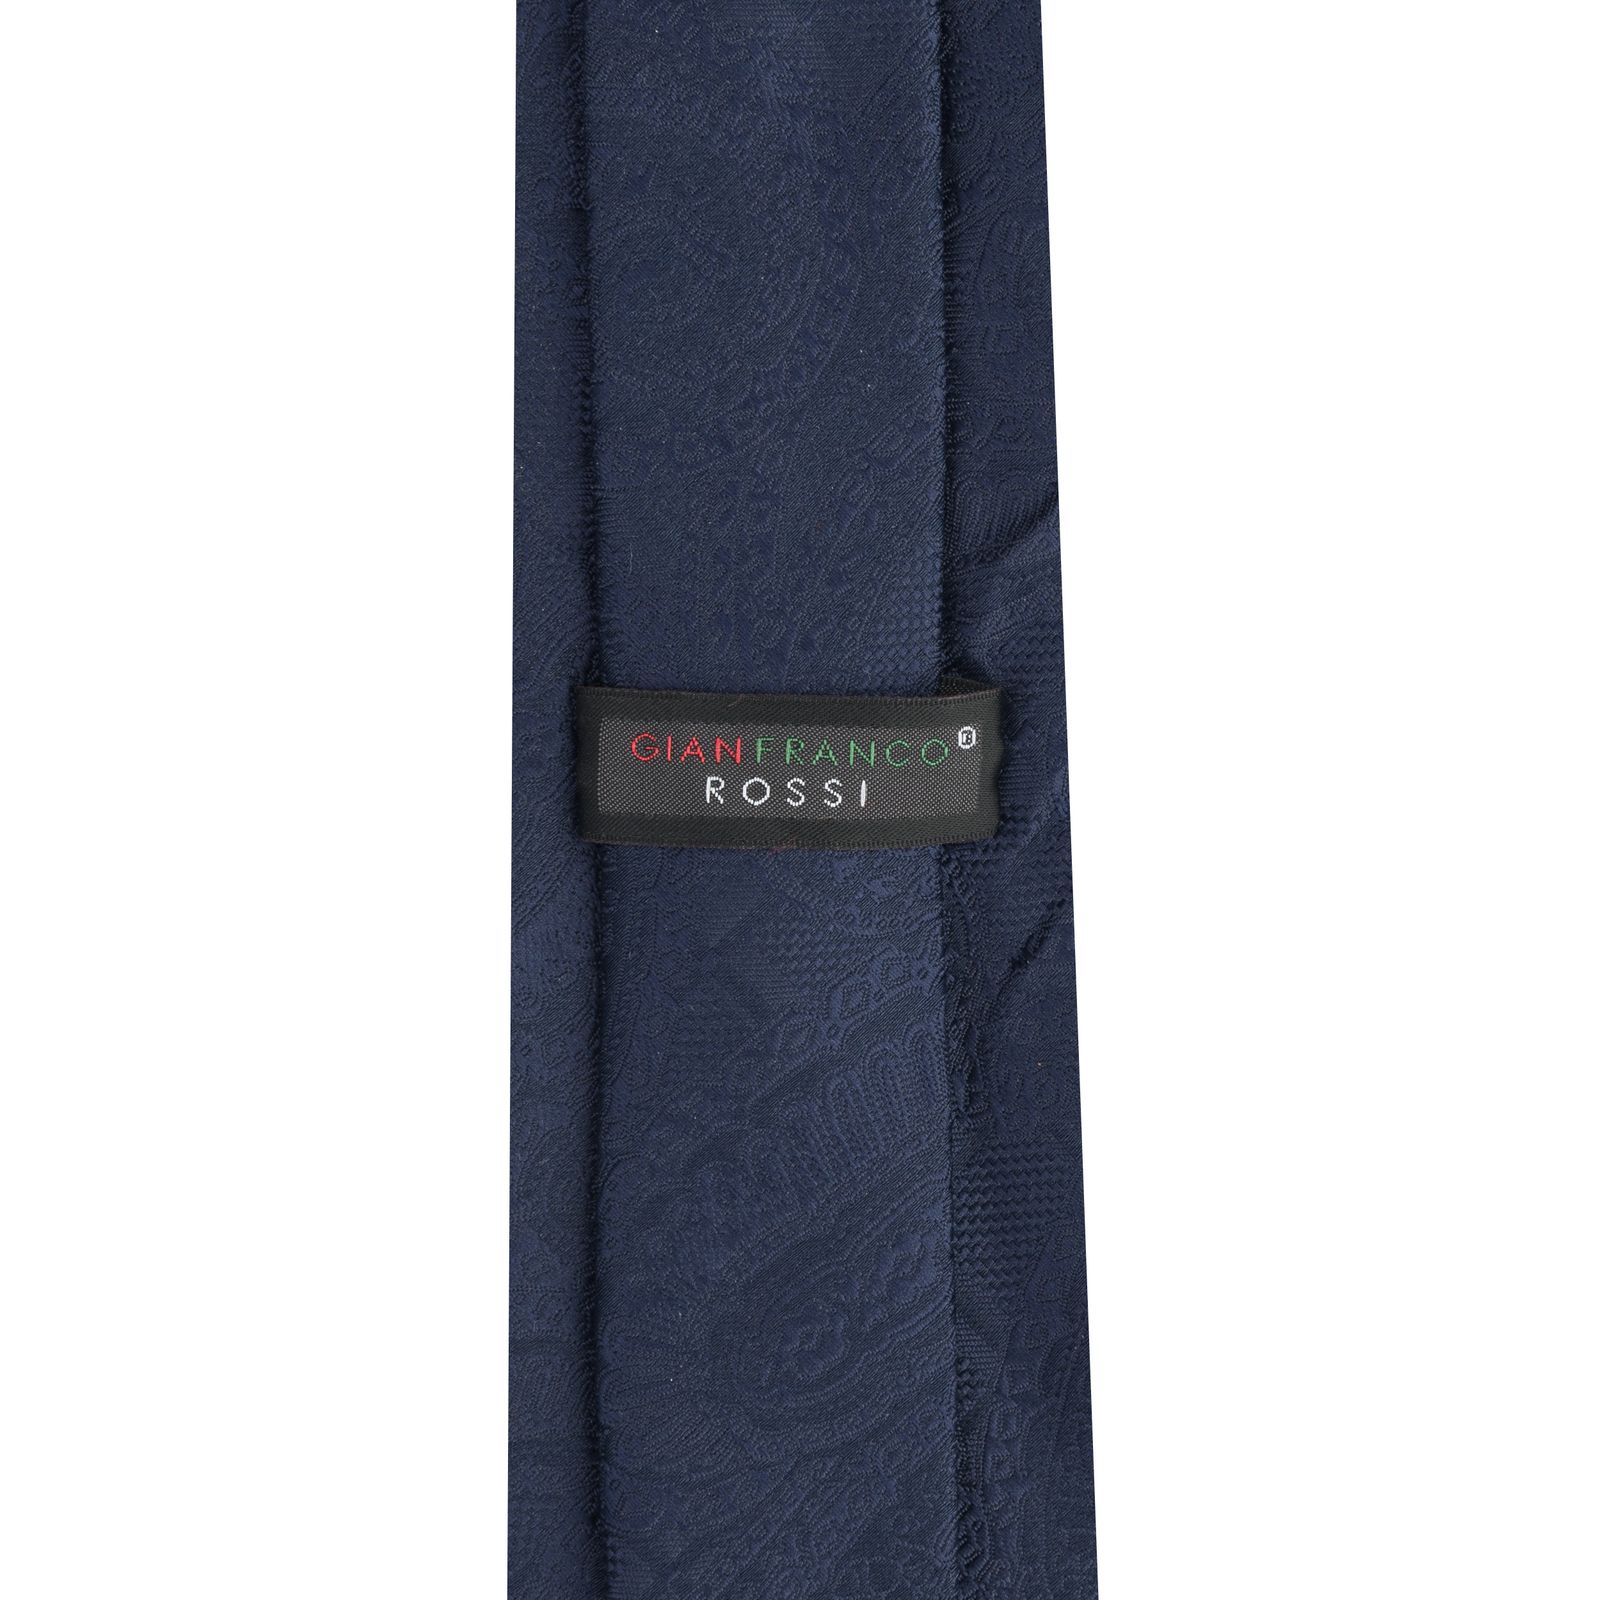  ست کراوات و دستمال جیب و گل کت مردانه جیان فرانکو روسی مدل GF-PA546-DB -  - 5